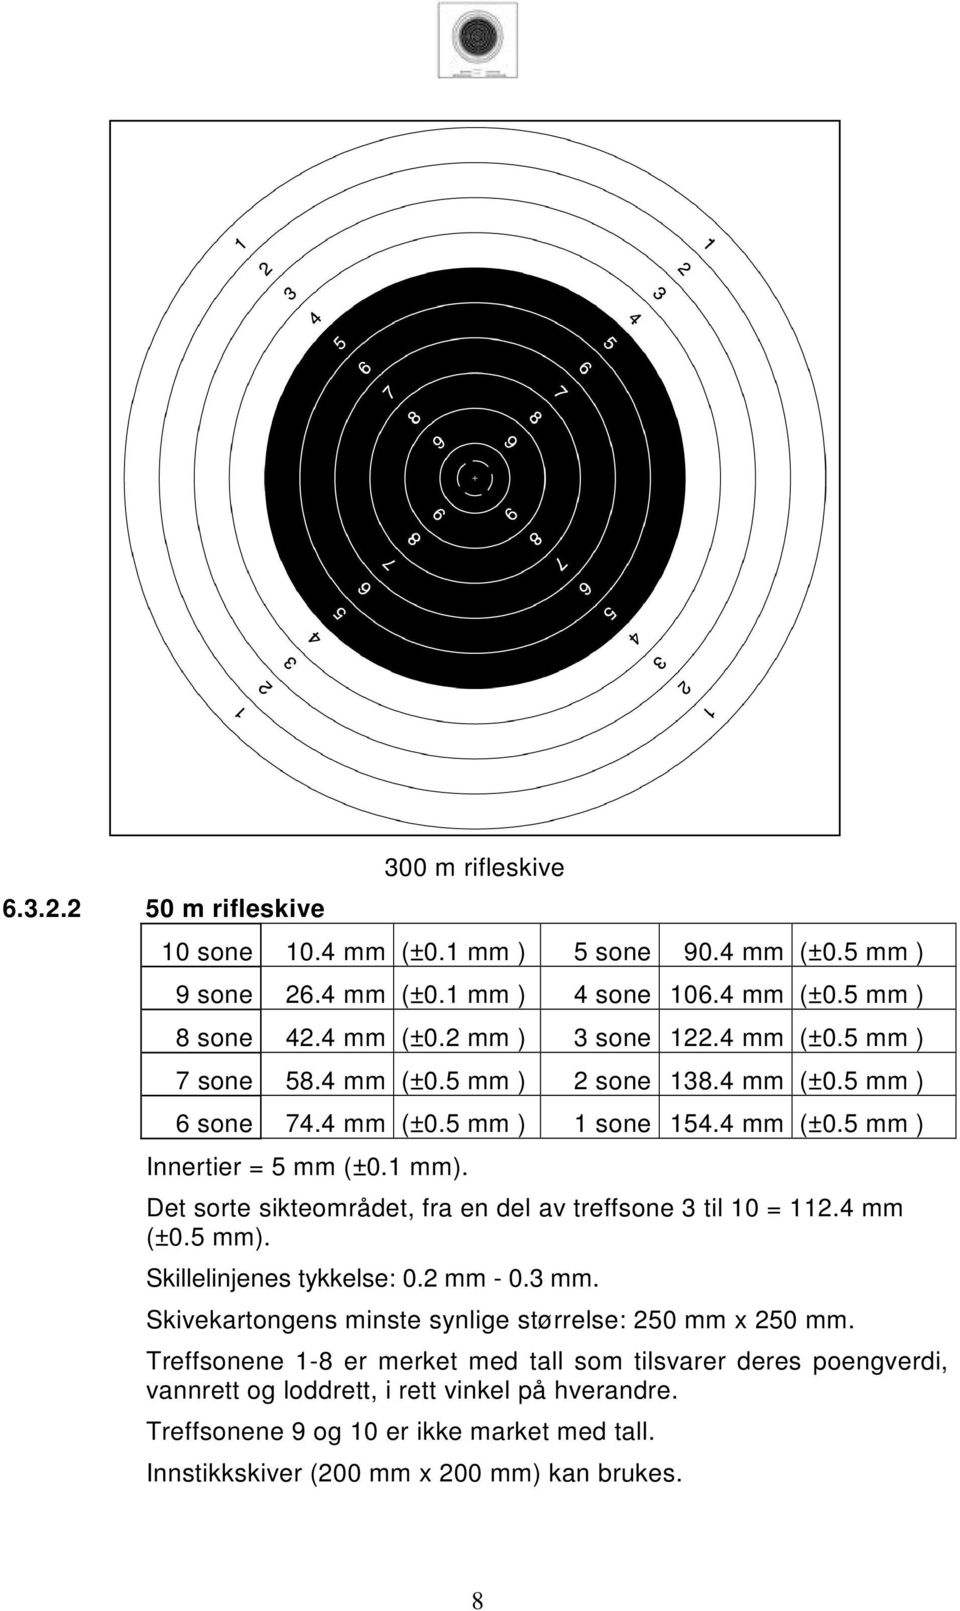 Det sorte sikteområdet, fra en del av treffsone 3 til 10 = 112.4 mm (±0.5 mm). Skillelinjenes tykkelse: 0.2 mm - 0.3 mm. Skivekartongens minste synlige størrelse: 250 mm x 250 mm.